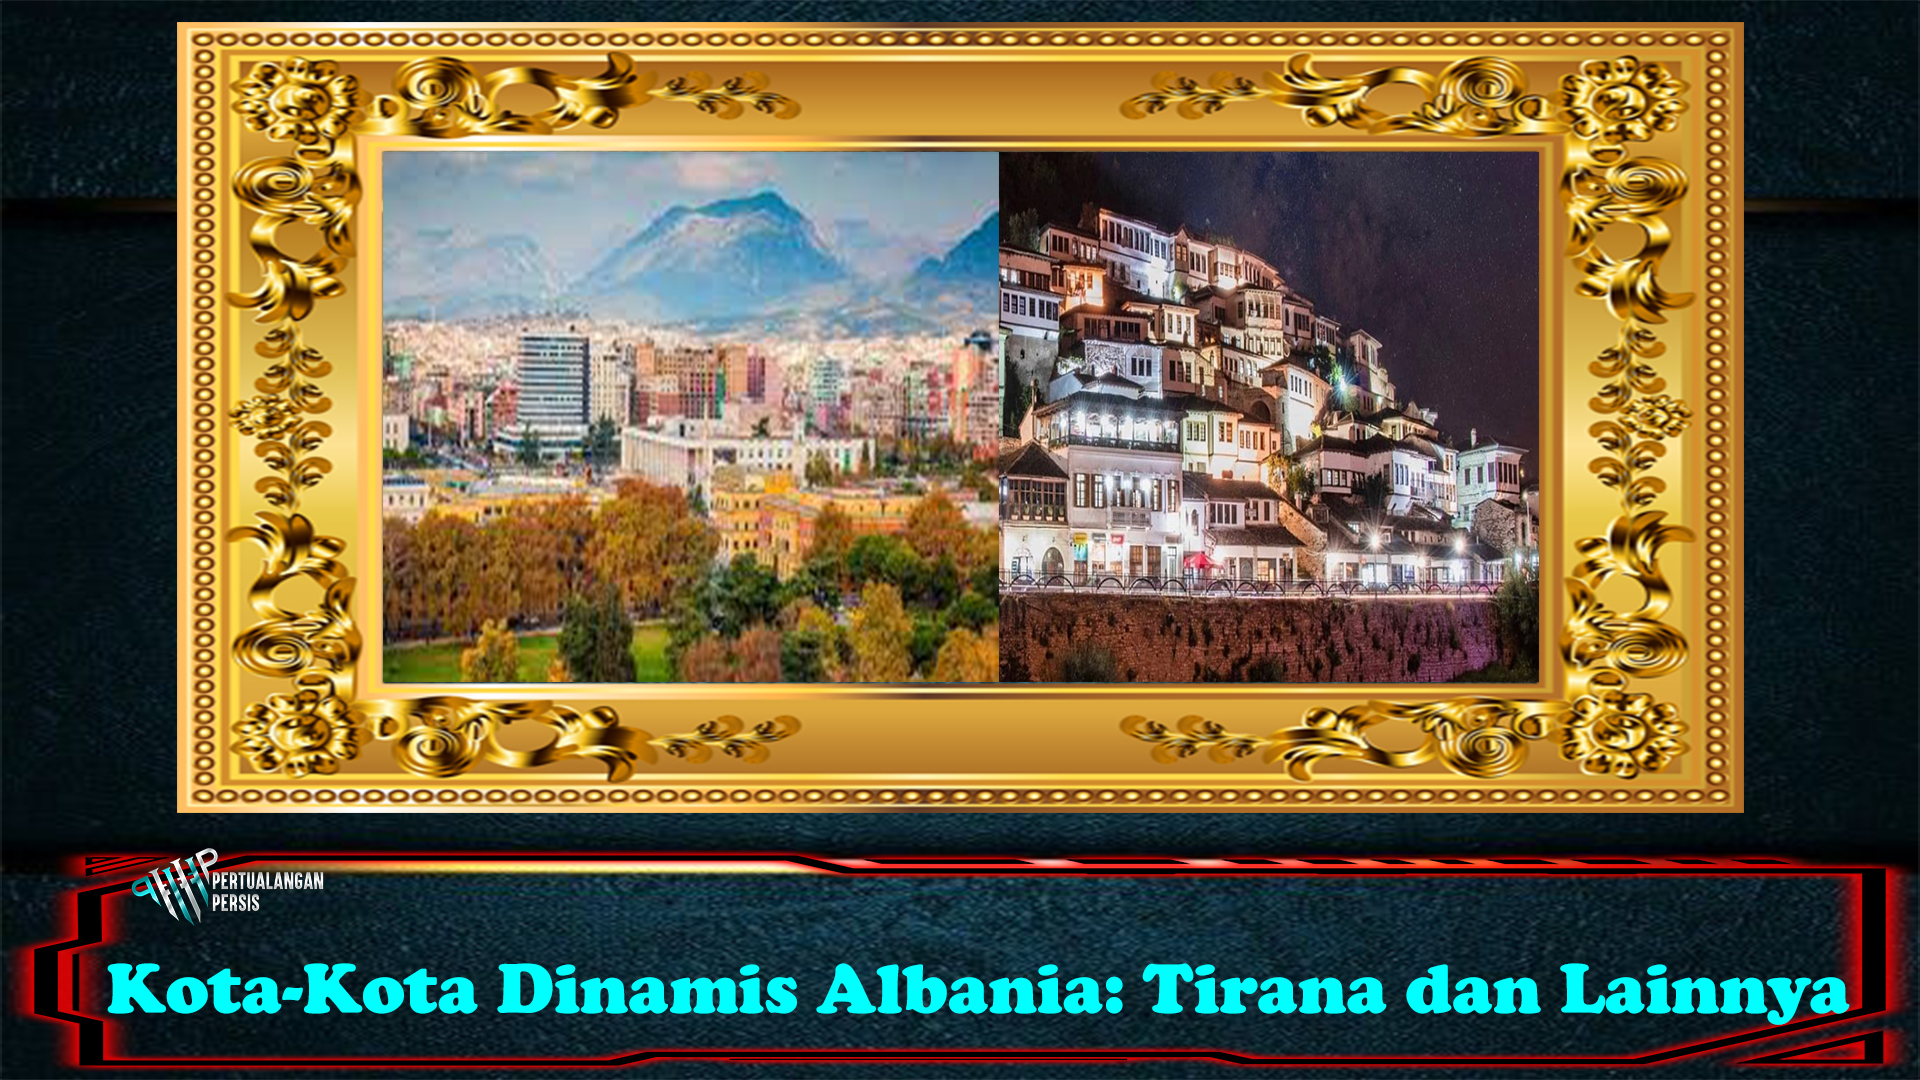 Kota-Kota Dinamis Albania: Tirana dan Lainnya